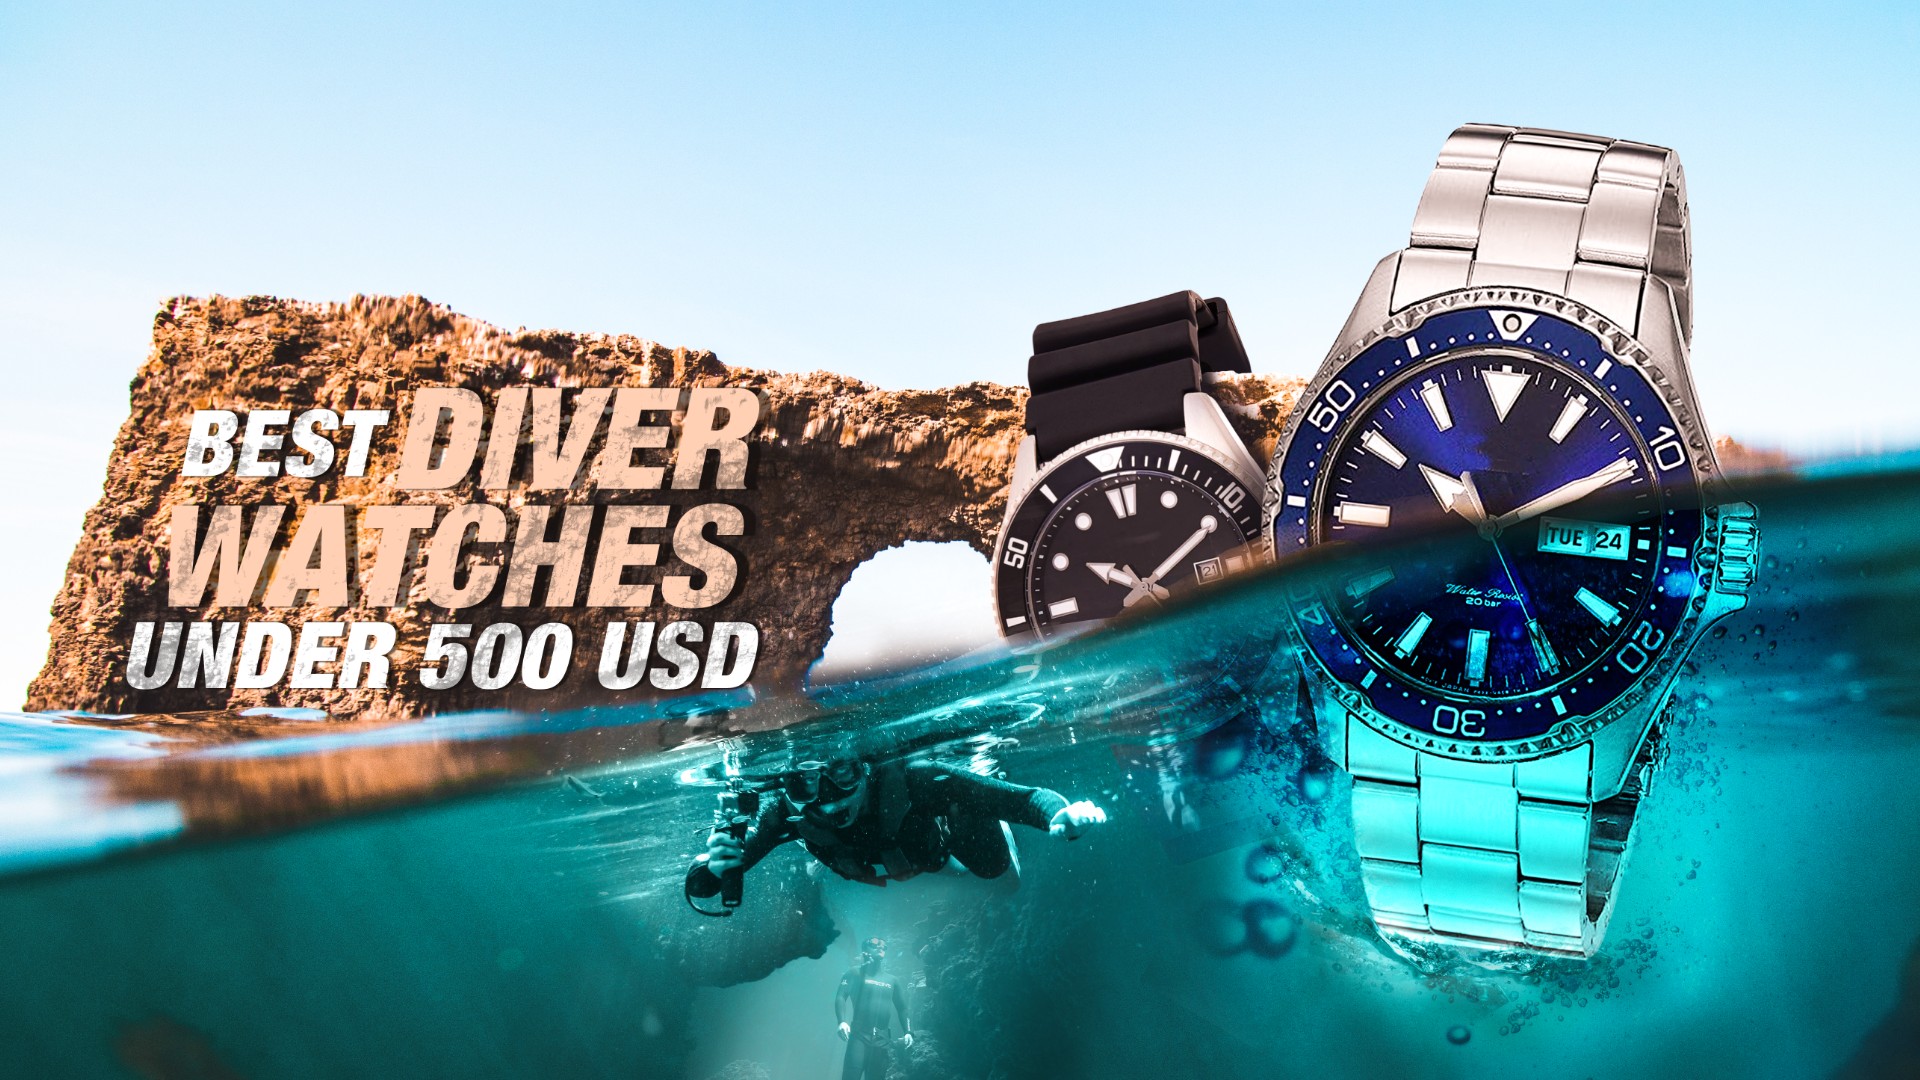 8 Best Diver Watches Under 500 USD